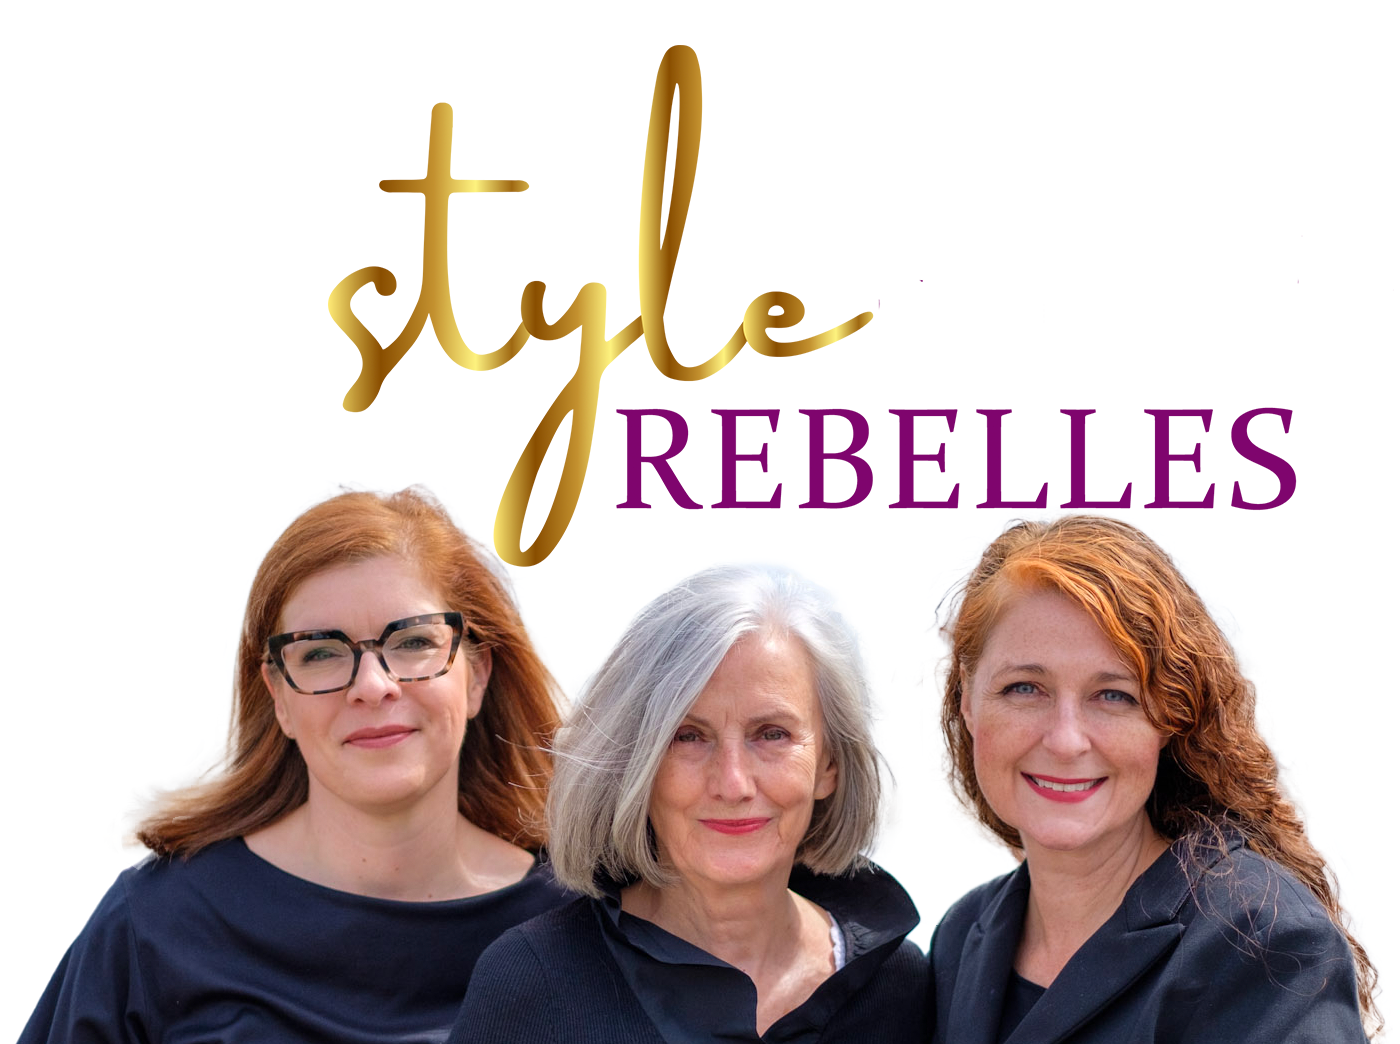 stylerebelles - ein Ü40, Ü50 und Ü60 Modeblog von und für Frauen über 40, 50 und 60